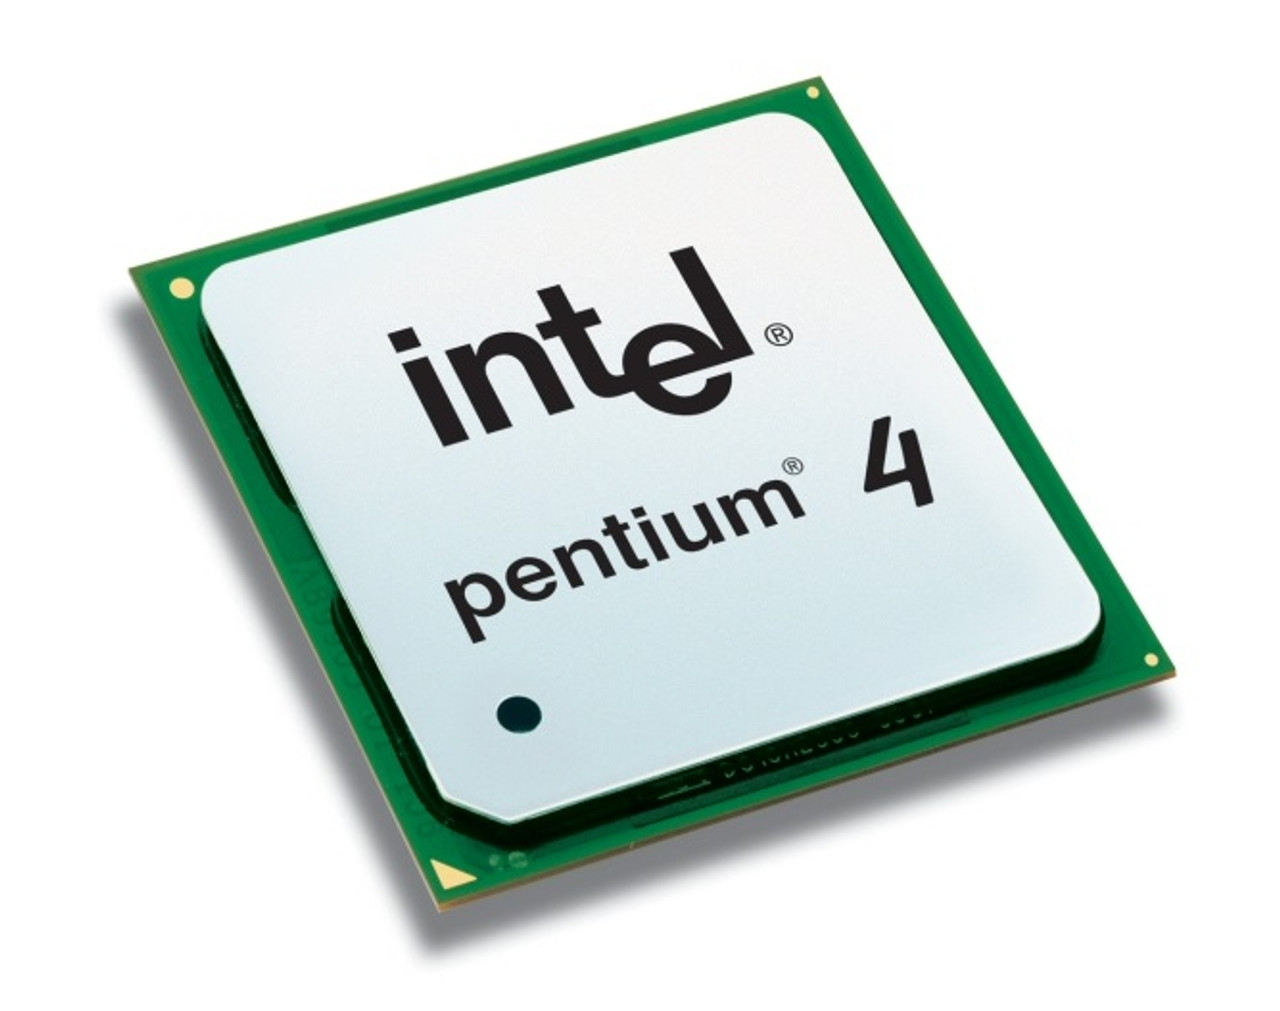 R7767 - Dell 2.6GHz 800MHz FSB 1MB L2 Cache Intel Pentium 4 560J Processor